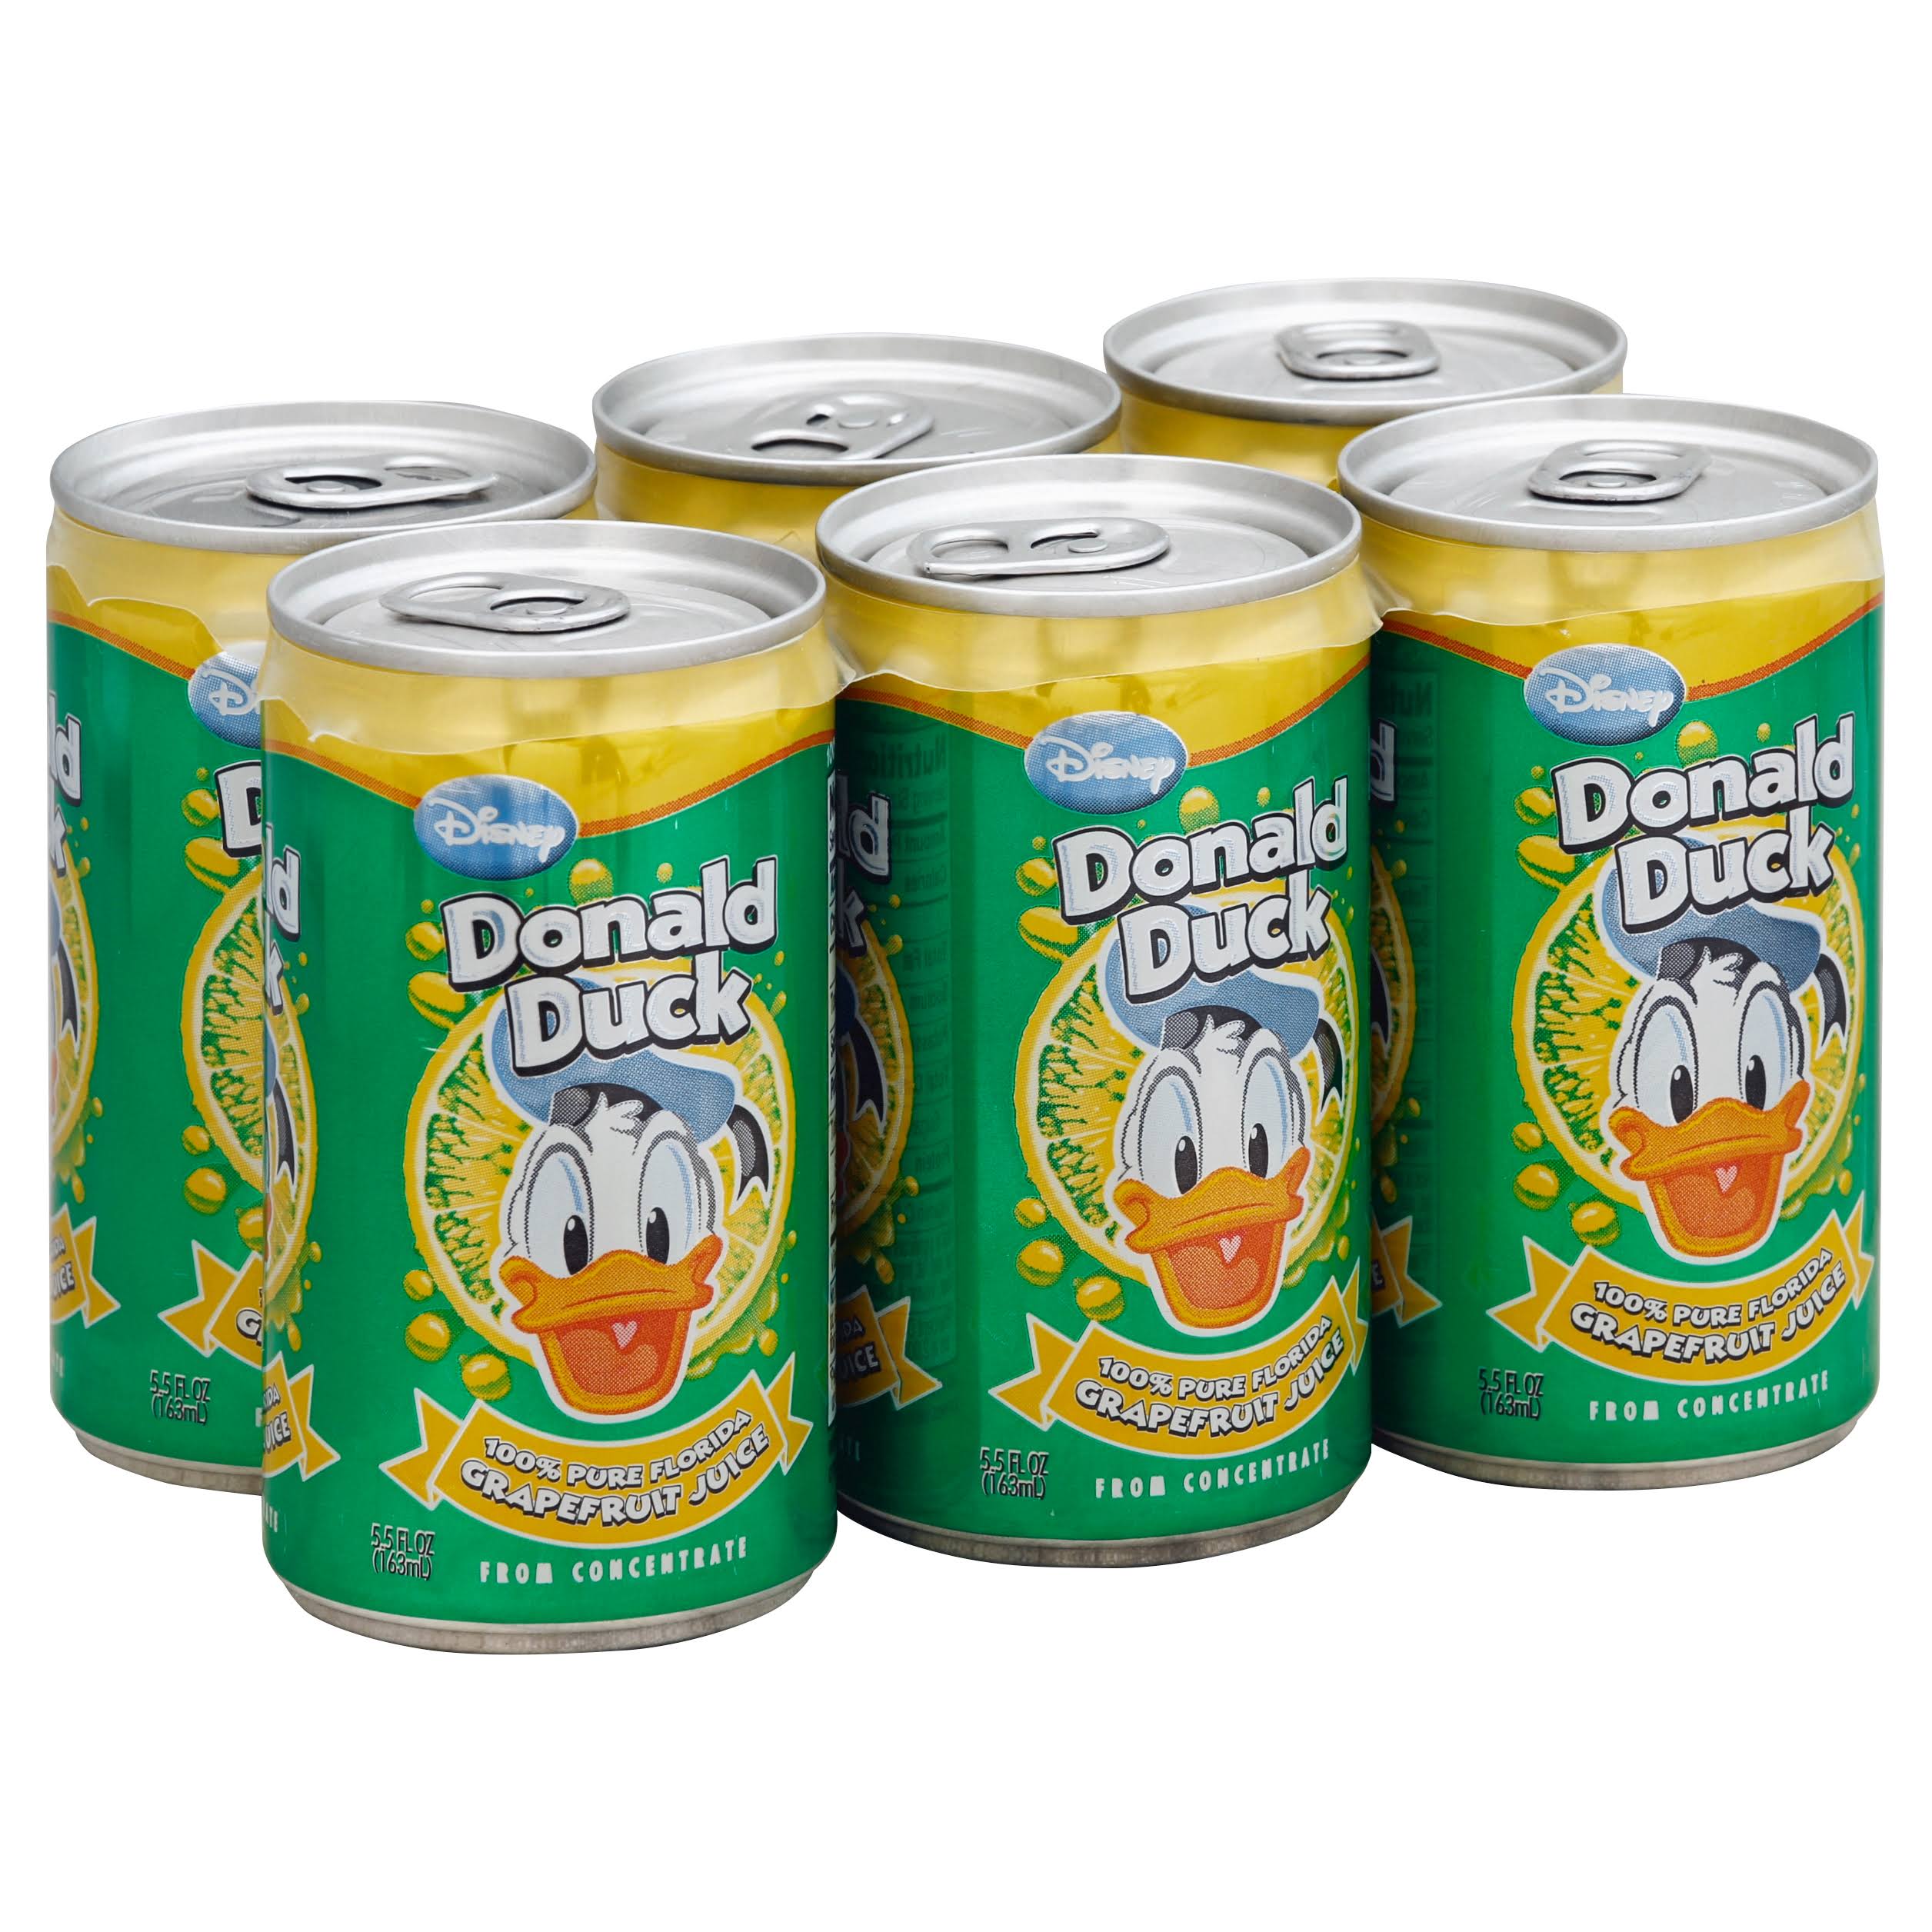 Donald Duck 100% Juice, Pure Florida Grapefruit - 6 pack, 5.5 fl oz cans